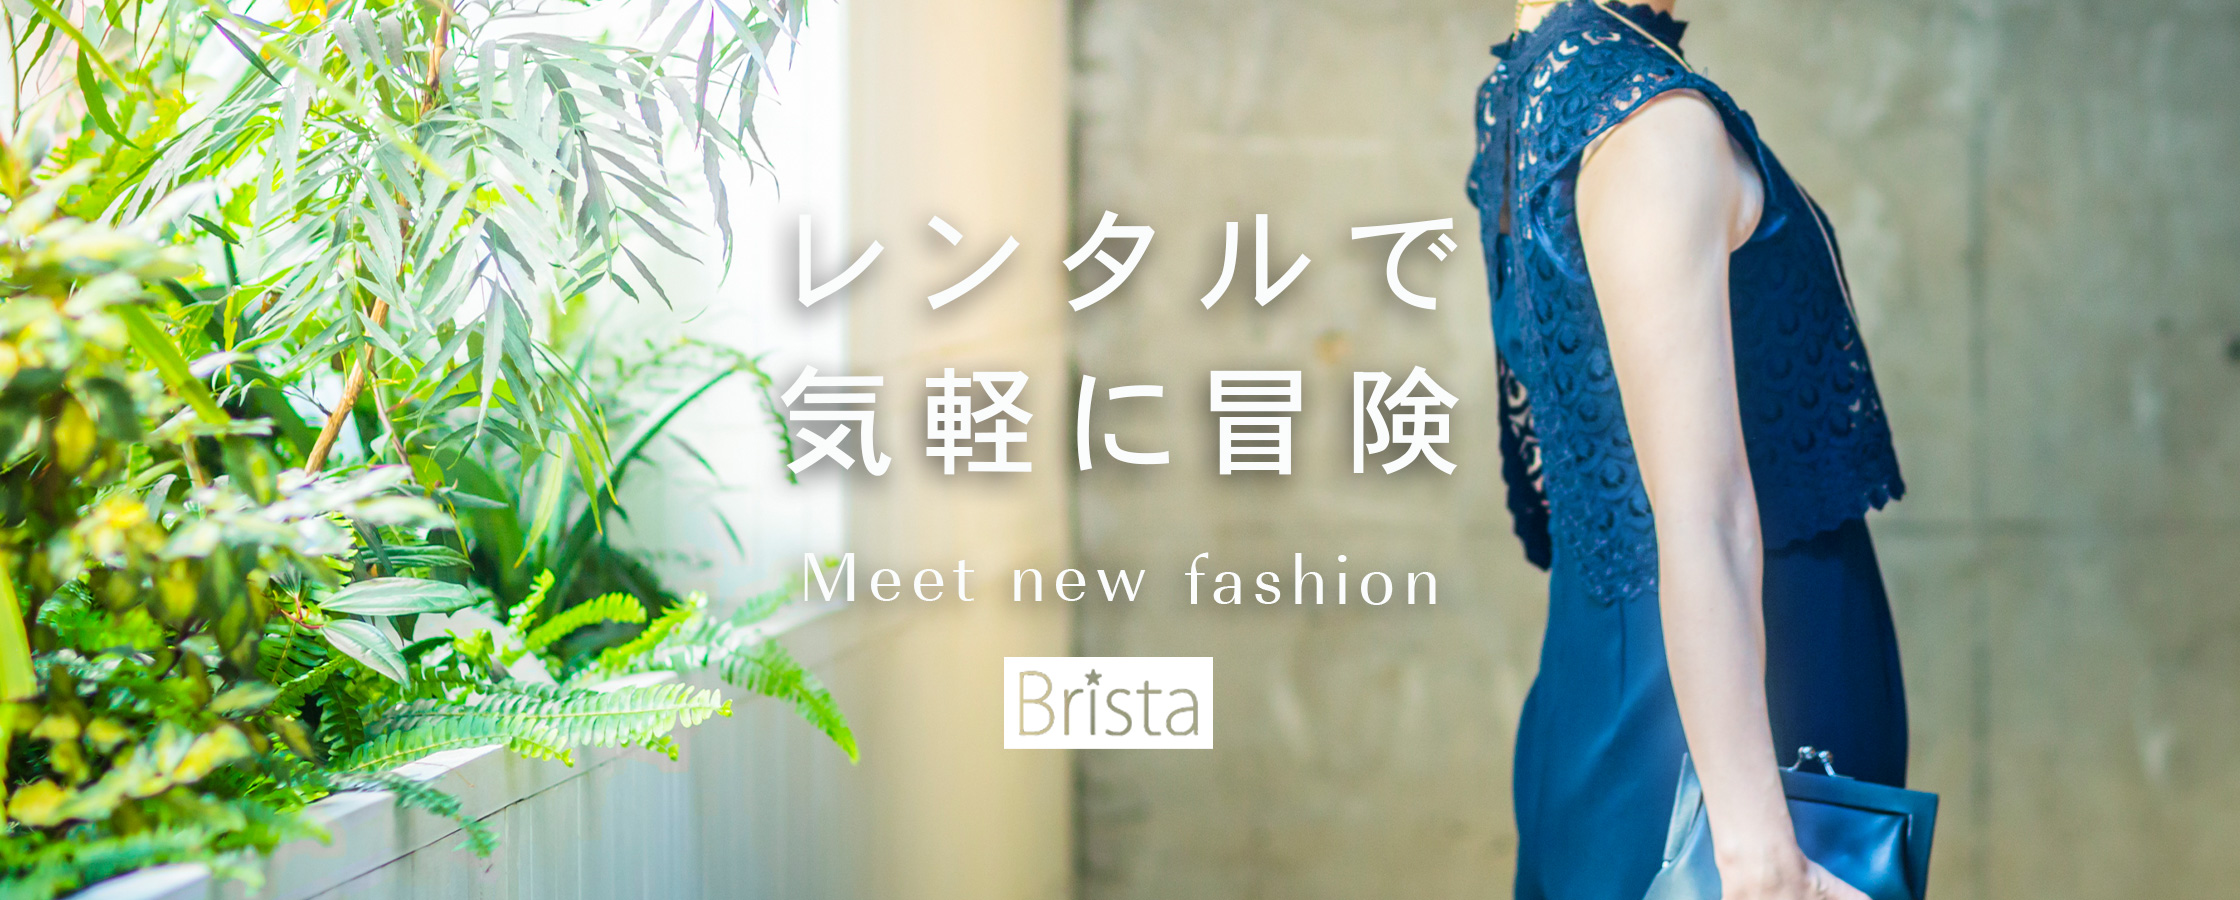 【総評】ブリスタはフォーマルで上質なファッションコーデを実現できる